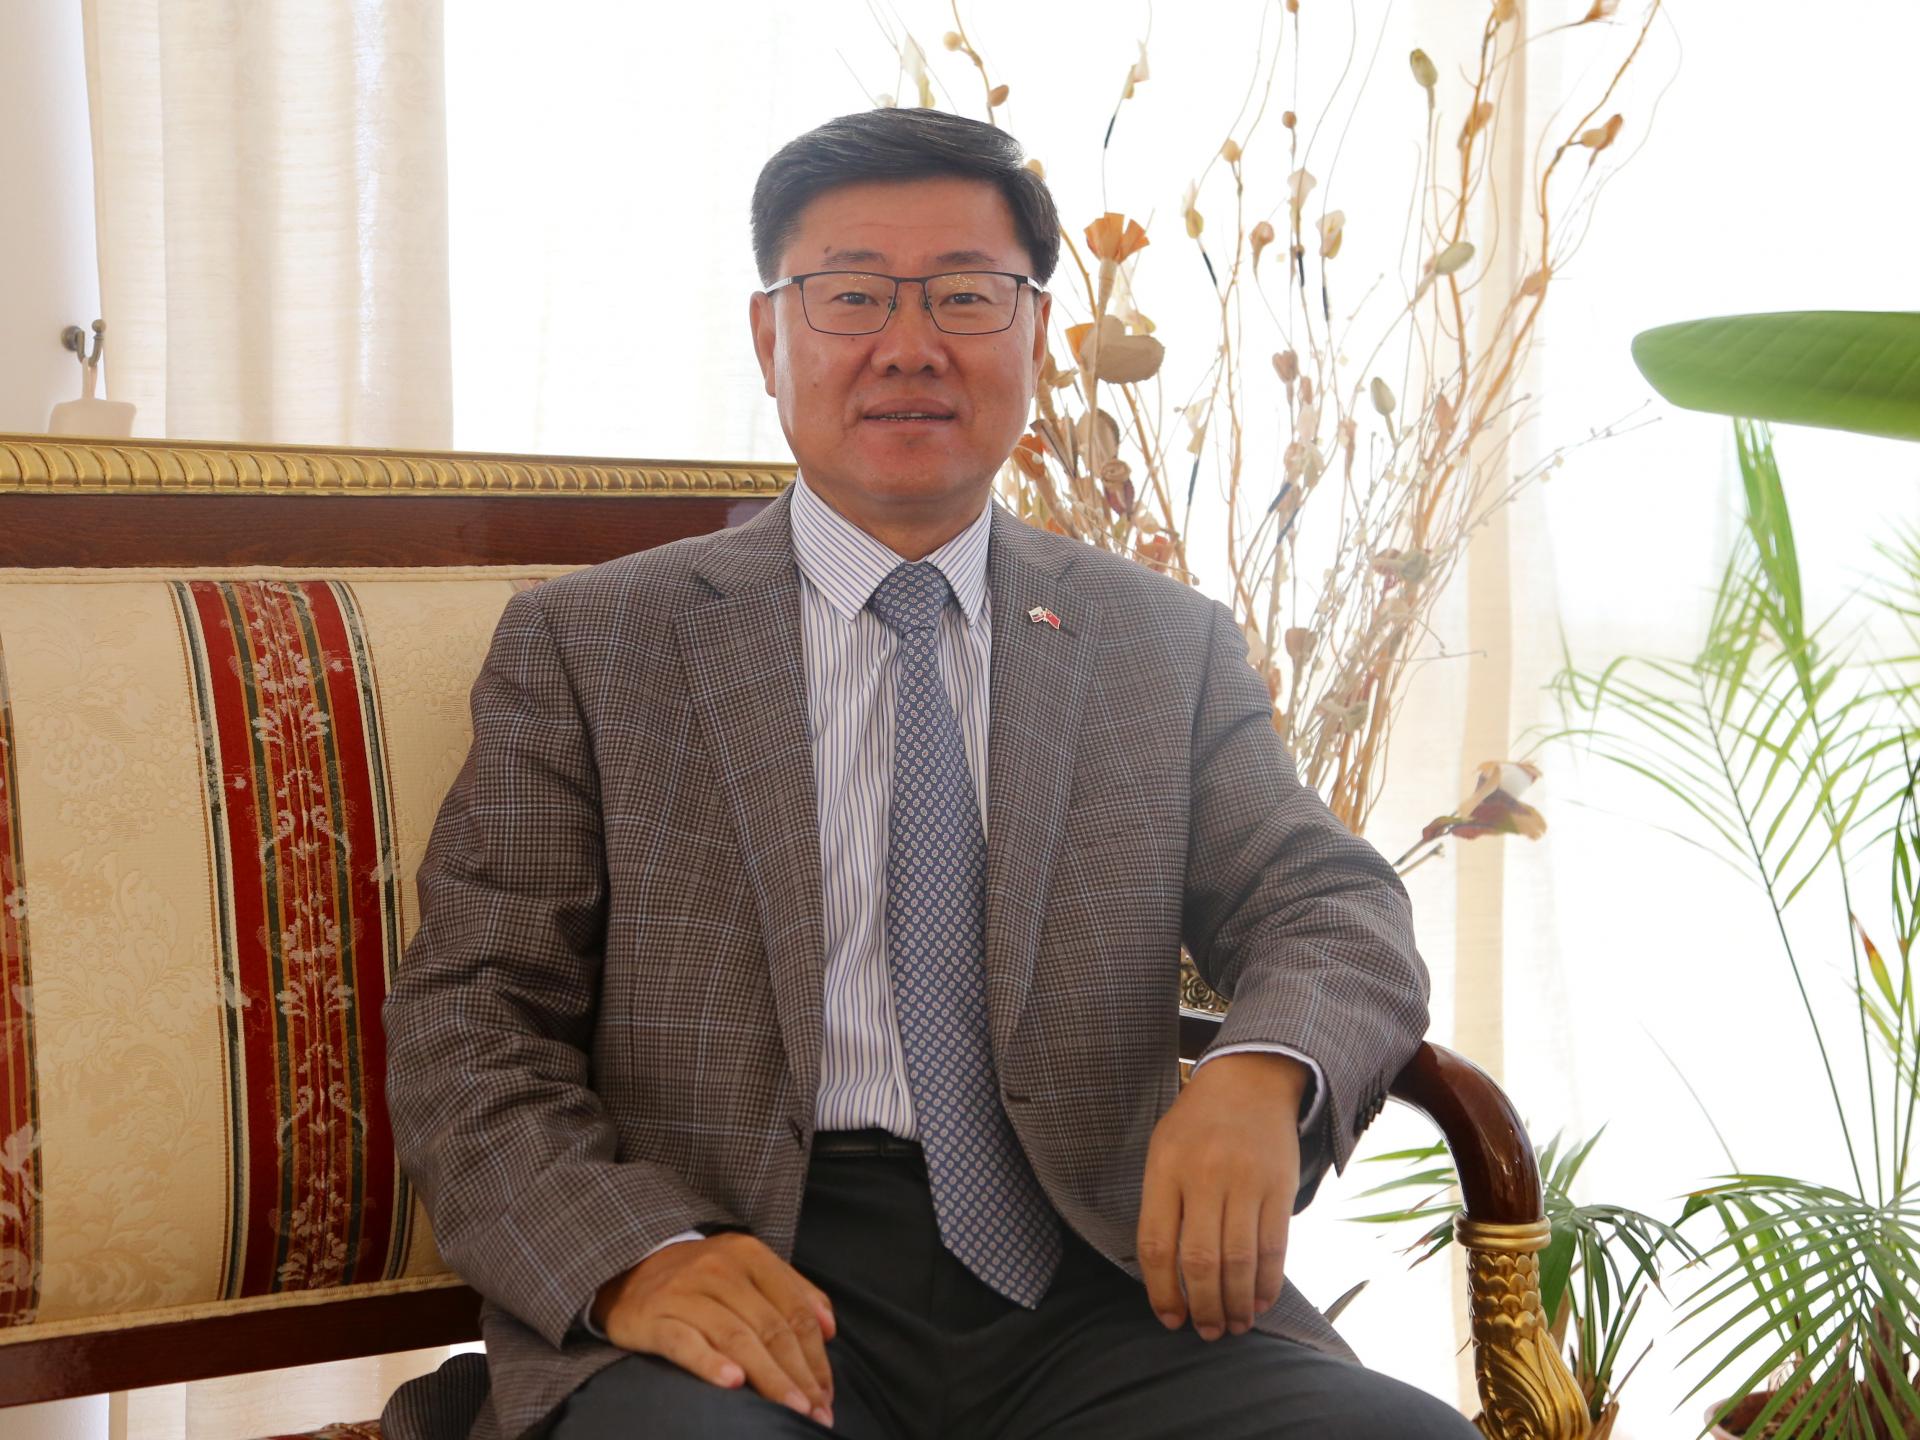 Čínsky veľvyslanec pre HN: Nesľubujeme, že v otázke Taiwanu sa vzdáme použitia sily